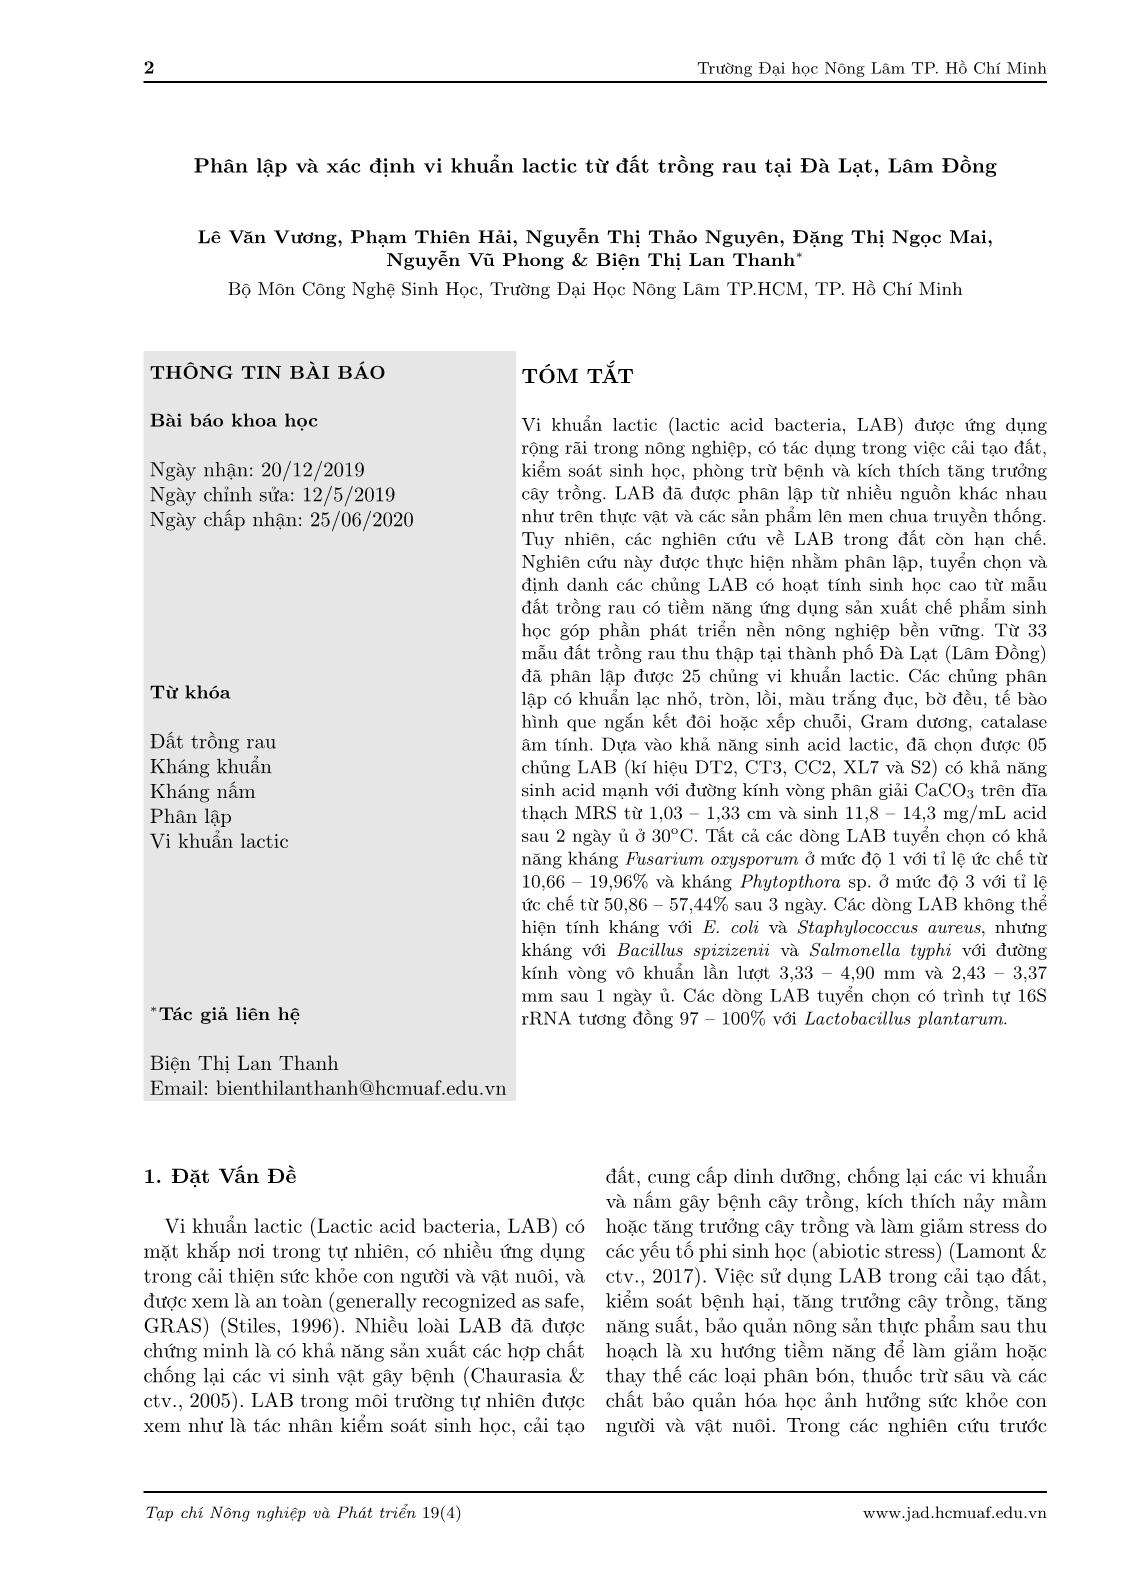 Phân lập và xác định vi khuẩn lactic từ đất trồng rau tại Đà Lạt, Lâm Đồng trang 2